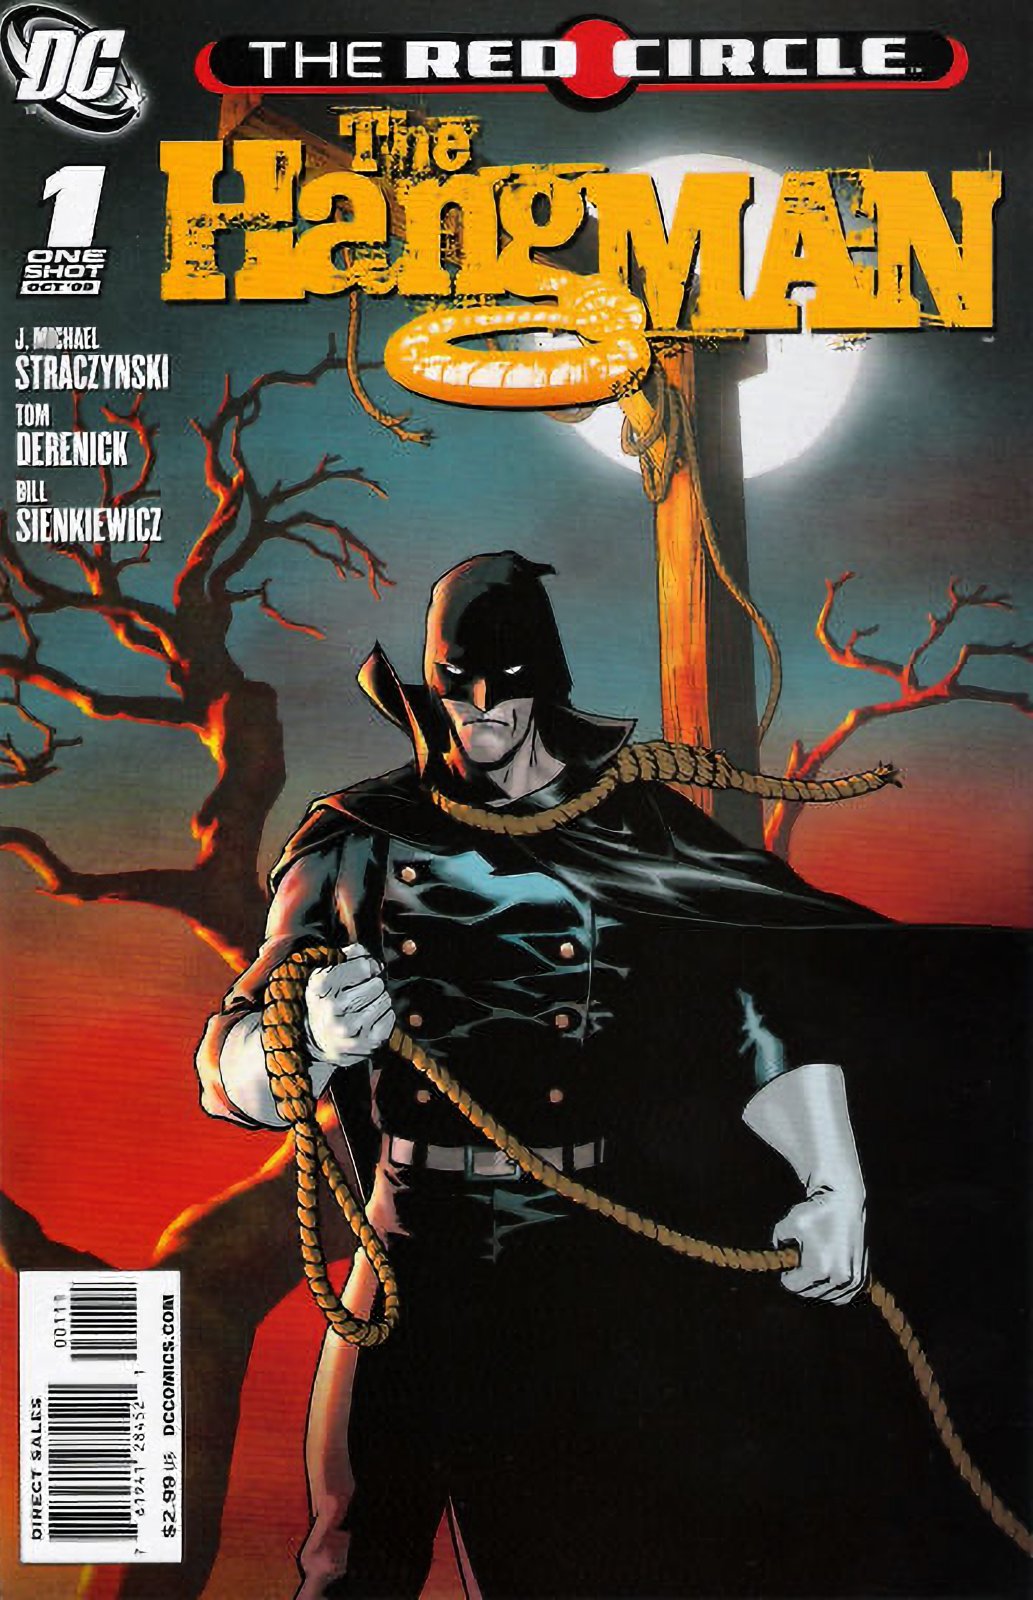 The Red Circle: The Hangman #1 (2009) DC Comics